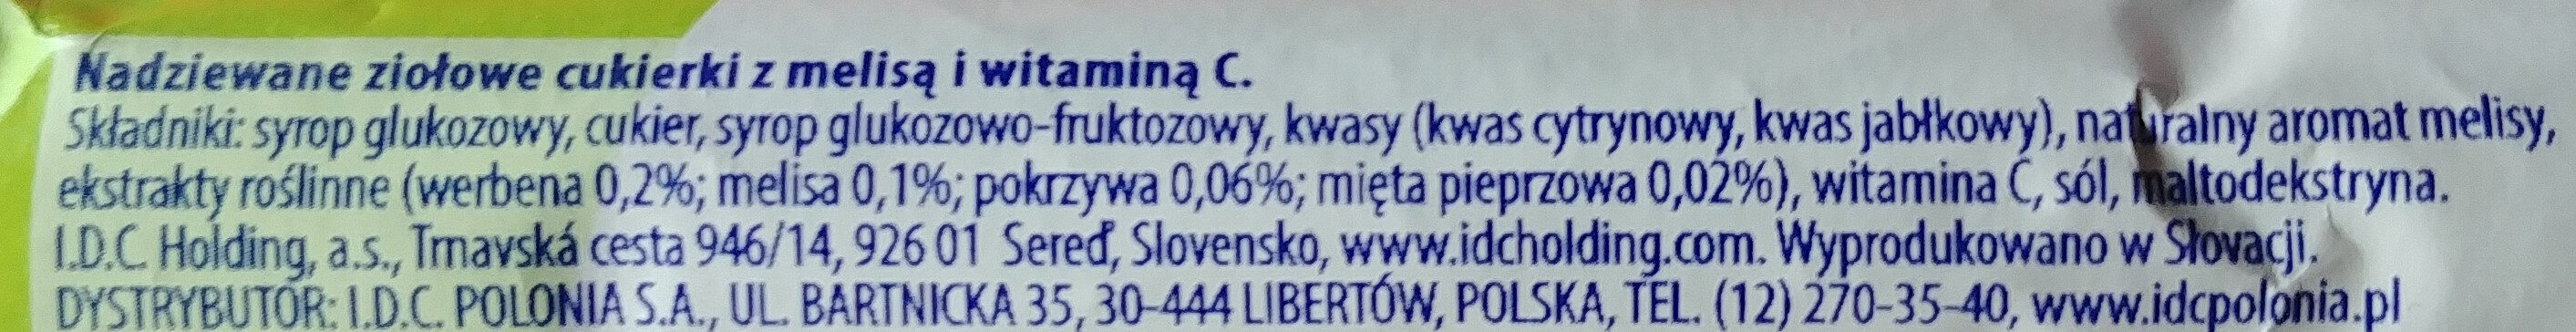 Nadziewane ziołowe cukierki z melisa i witaminą C - Składniki - pl